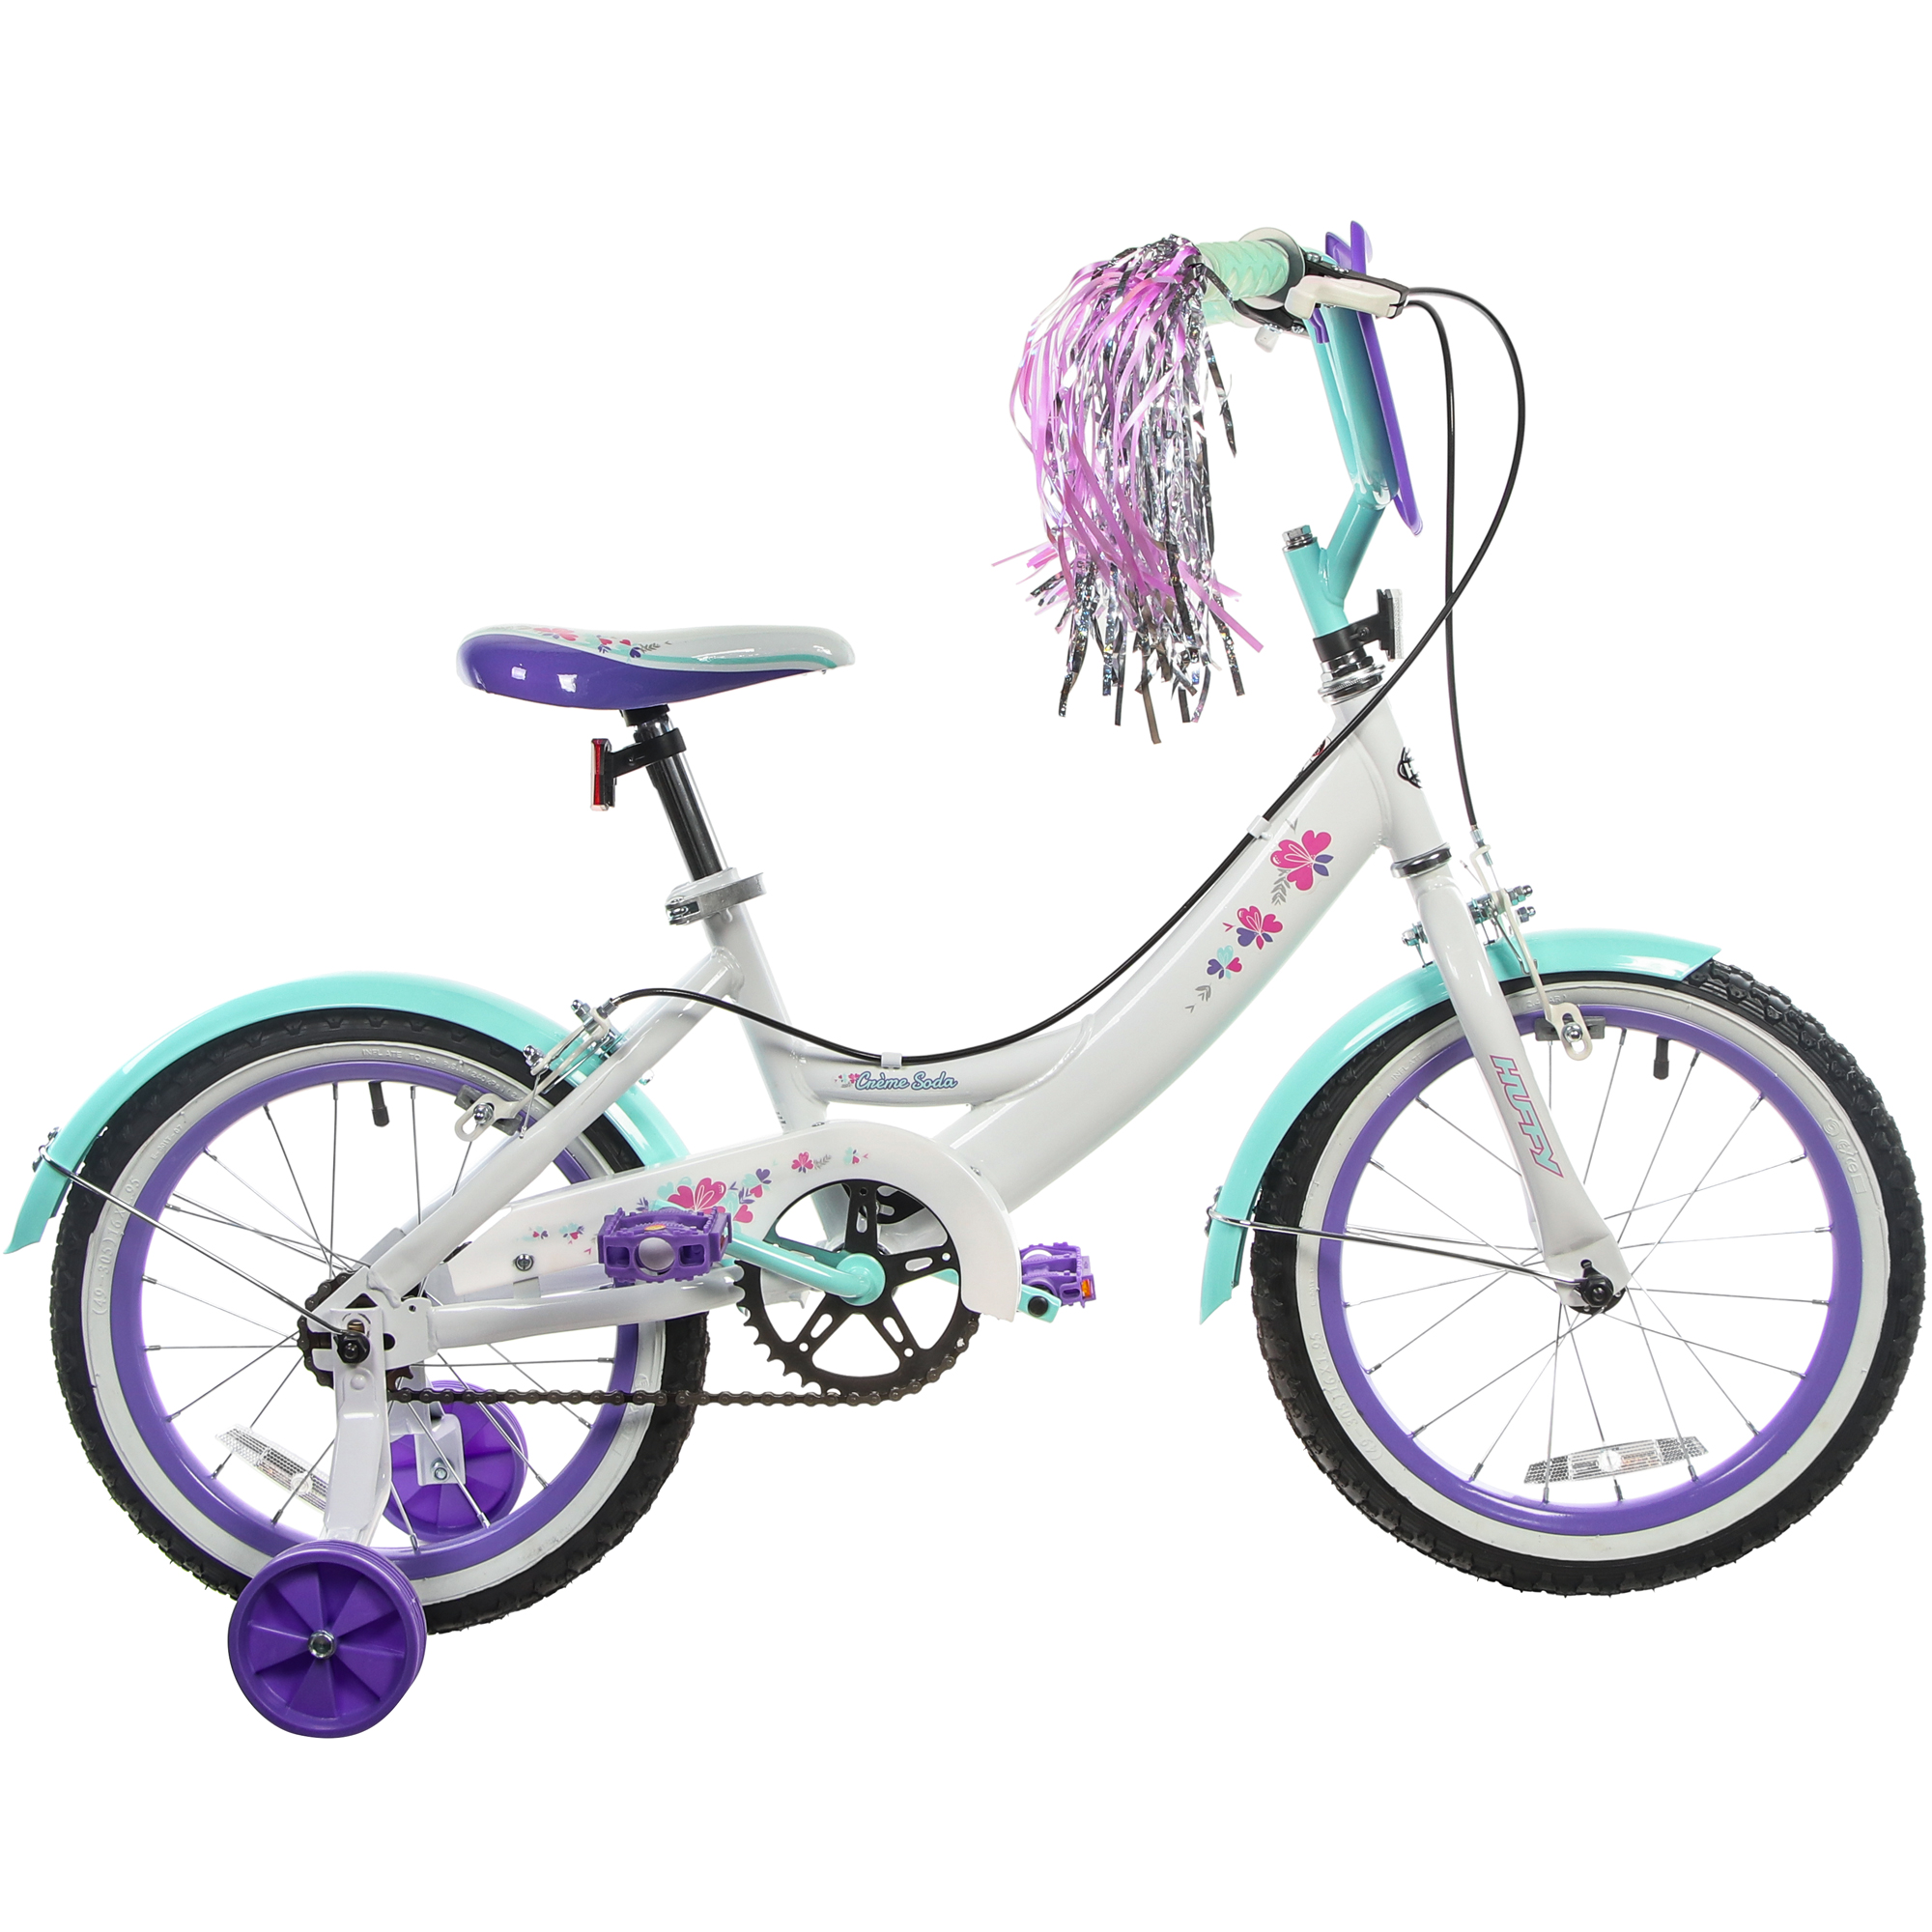 Велосипед детский Huffy Сreme soda, белый, 16 дюймов, для девочек, цвет бирюзовый - фото 3